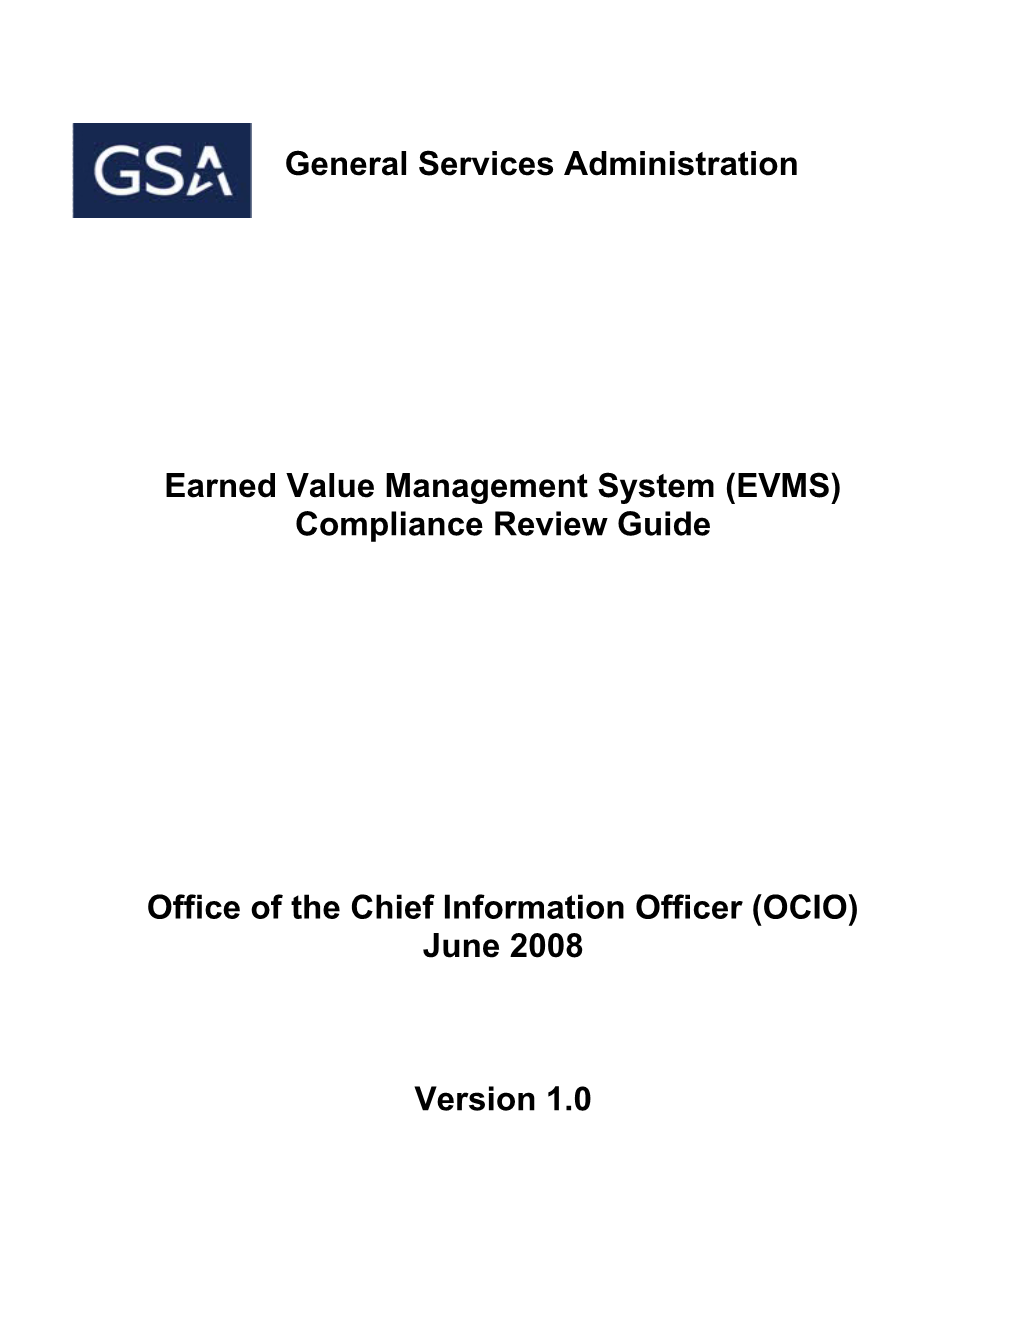 Earned Value Management System